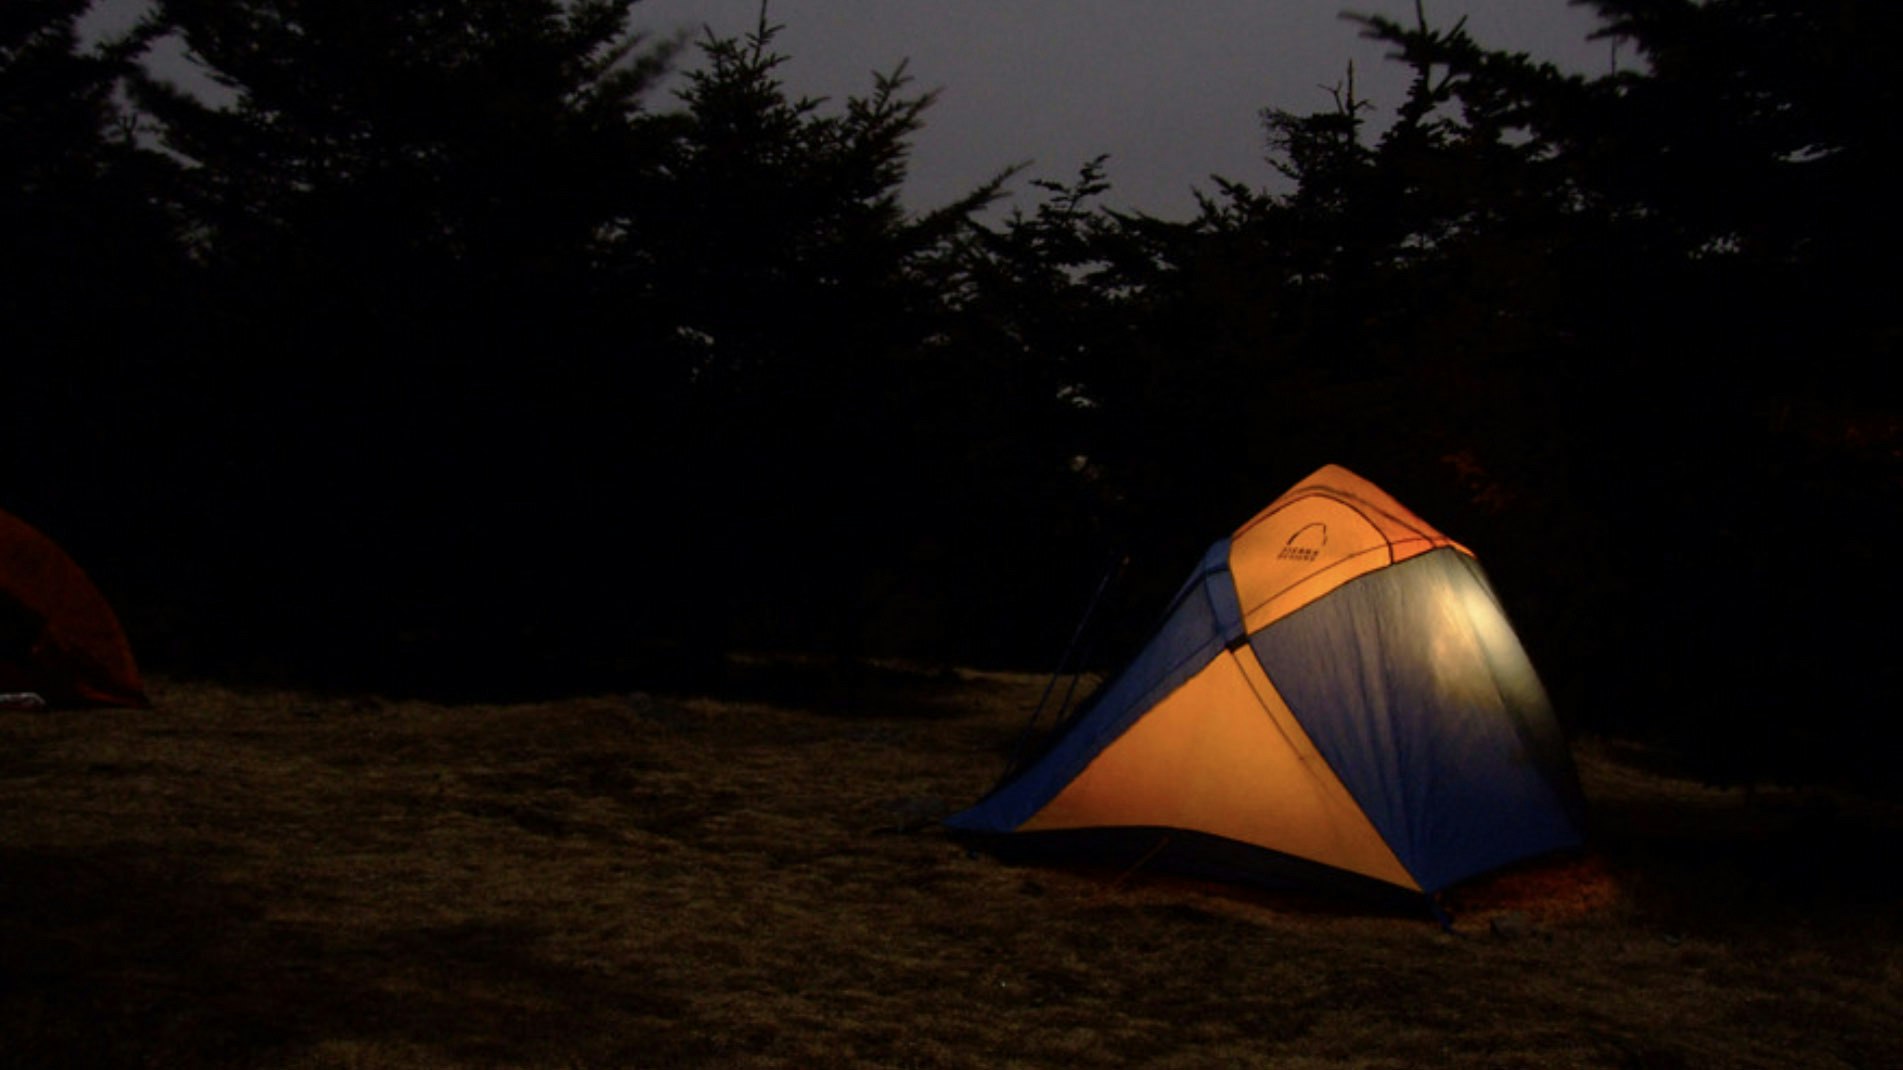 Camping at night 2